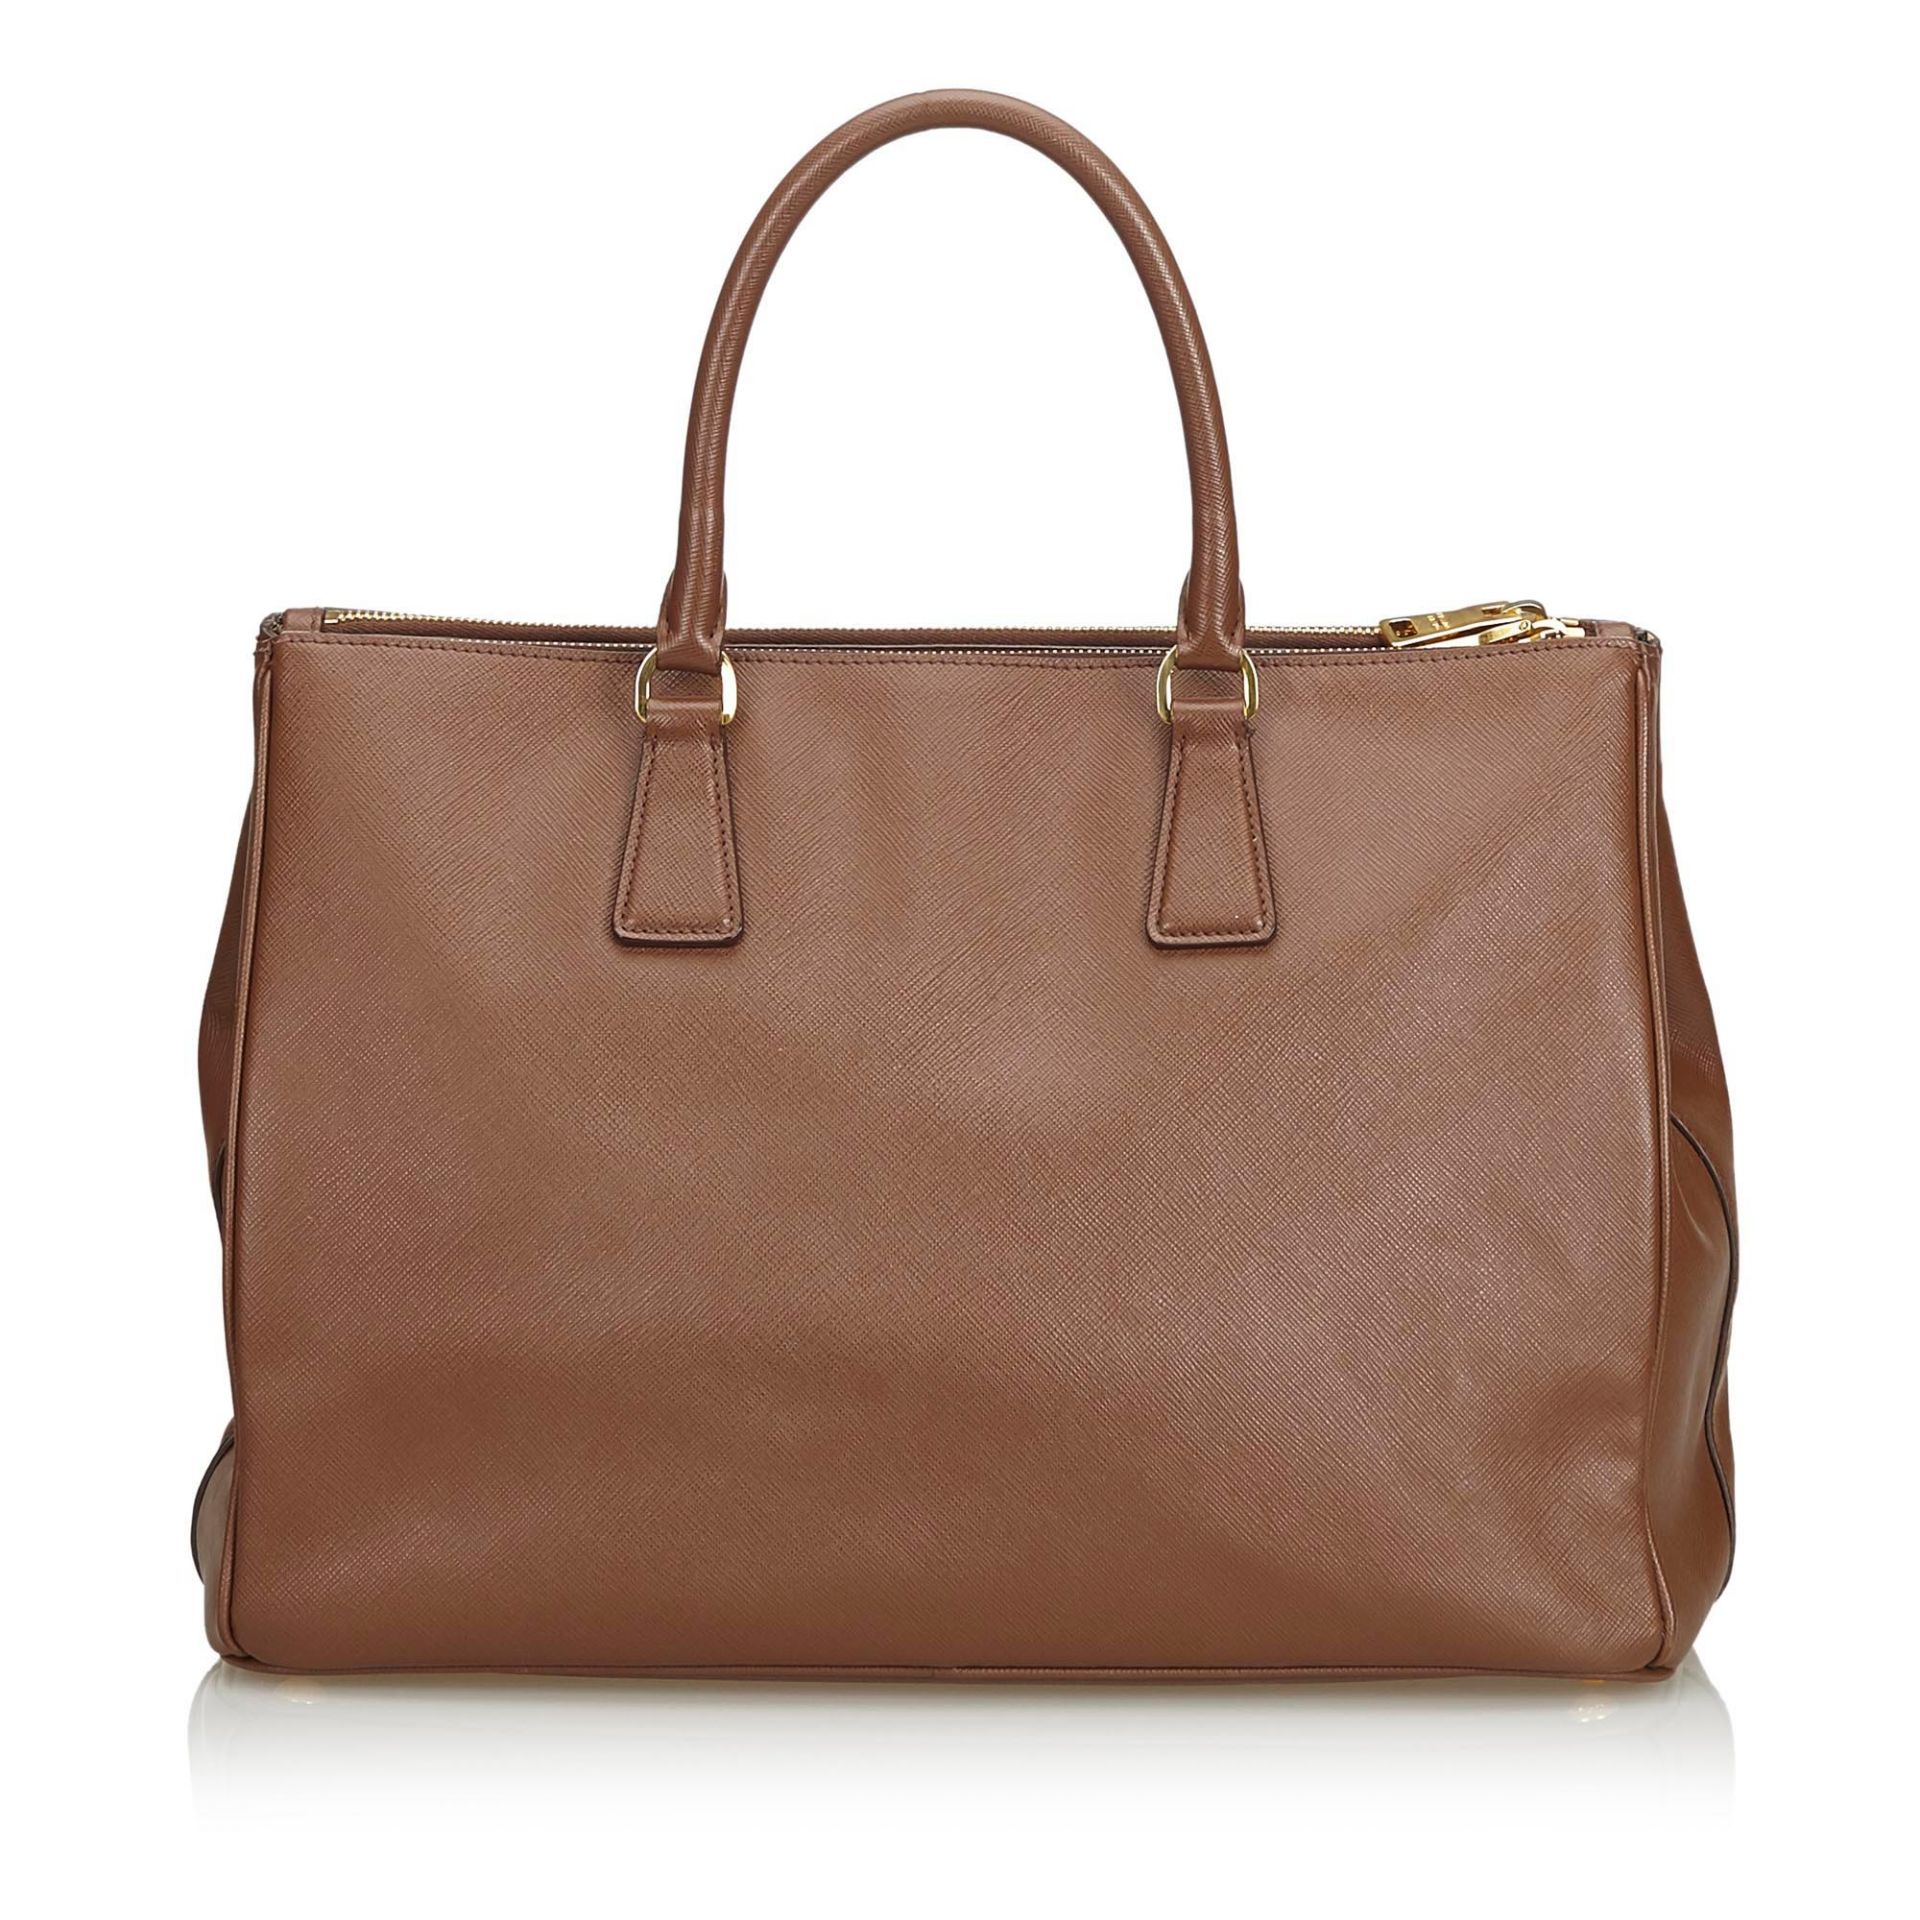 Prada Saffiano Leather Galleria Handbag - Image 3 of 10